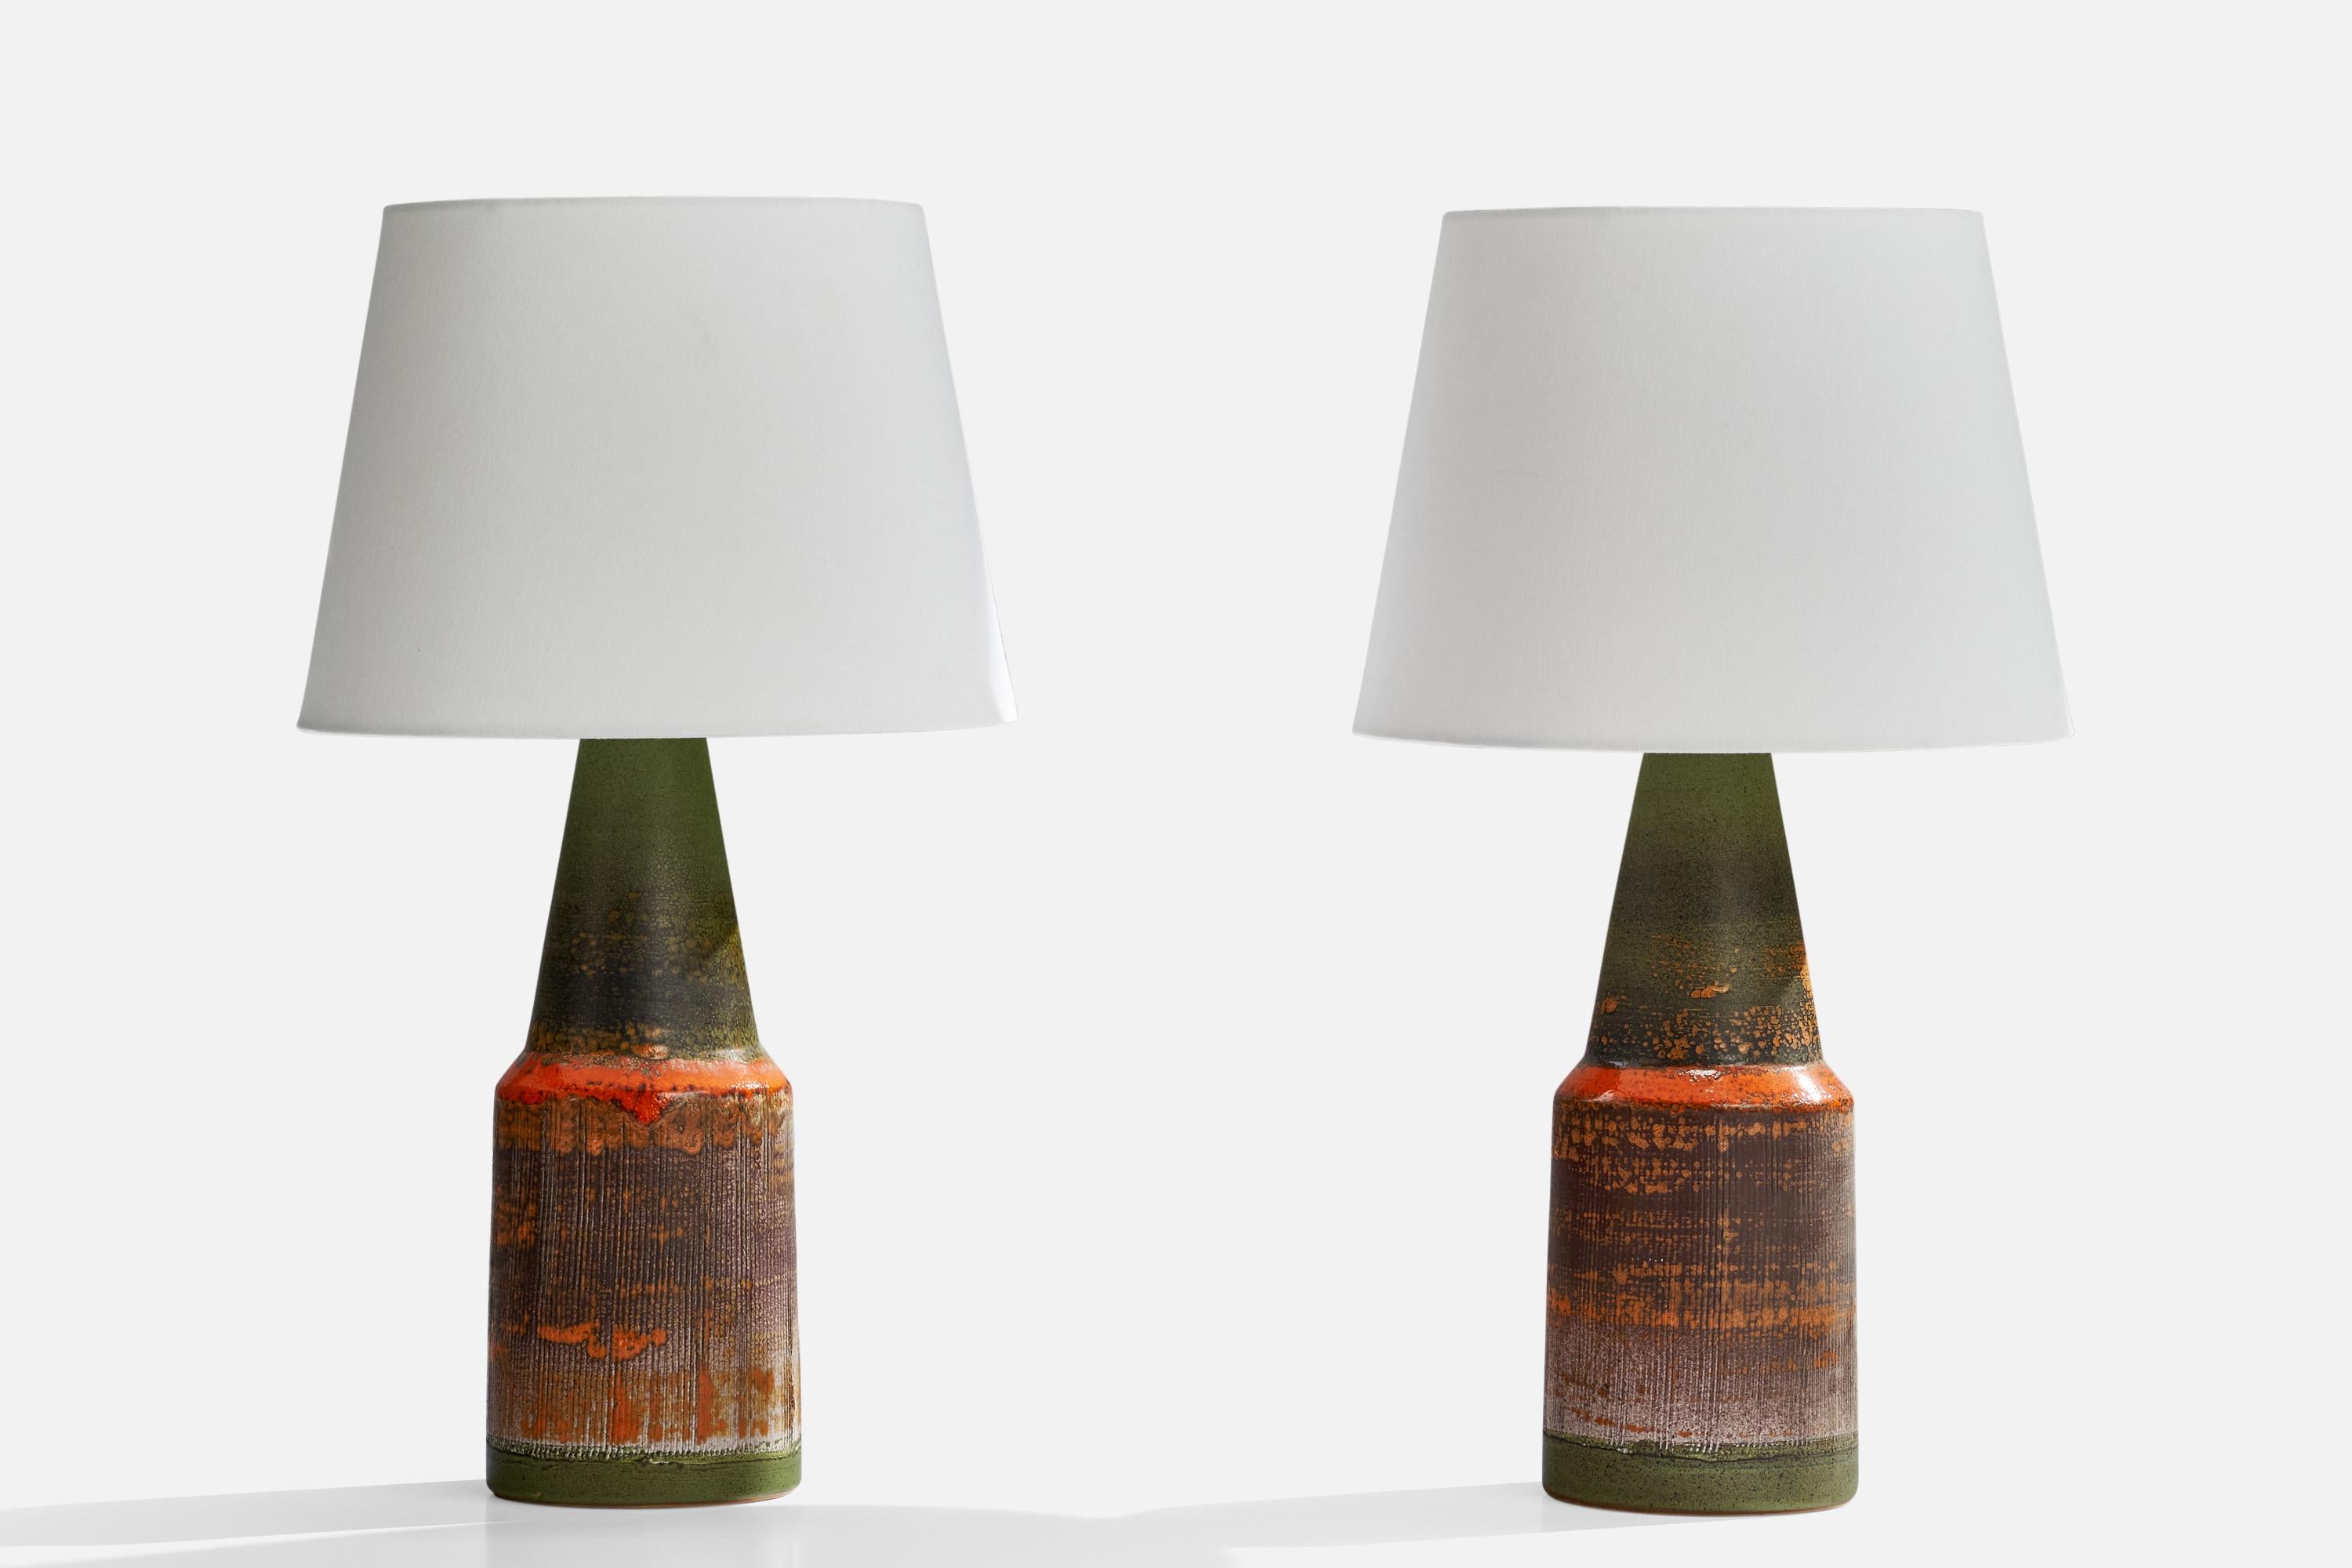 Paire de lampes de table en céramique émaillée verte et orange, conçues et produites par Tilgmans Keramik, Suède, années 1960.

Dimensions de la lampe (pouces) : 16.5